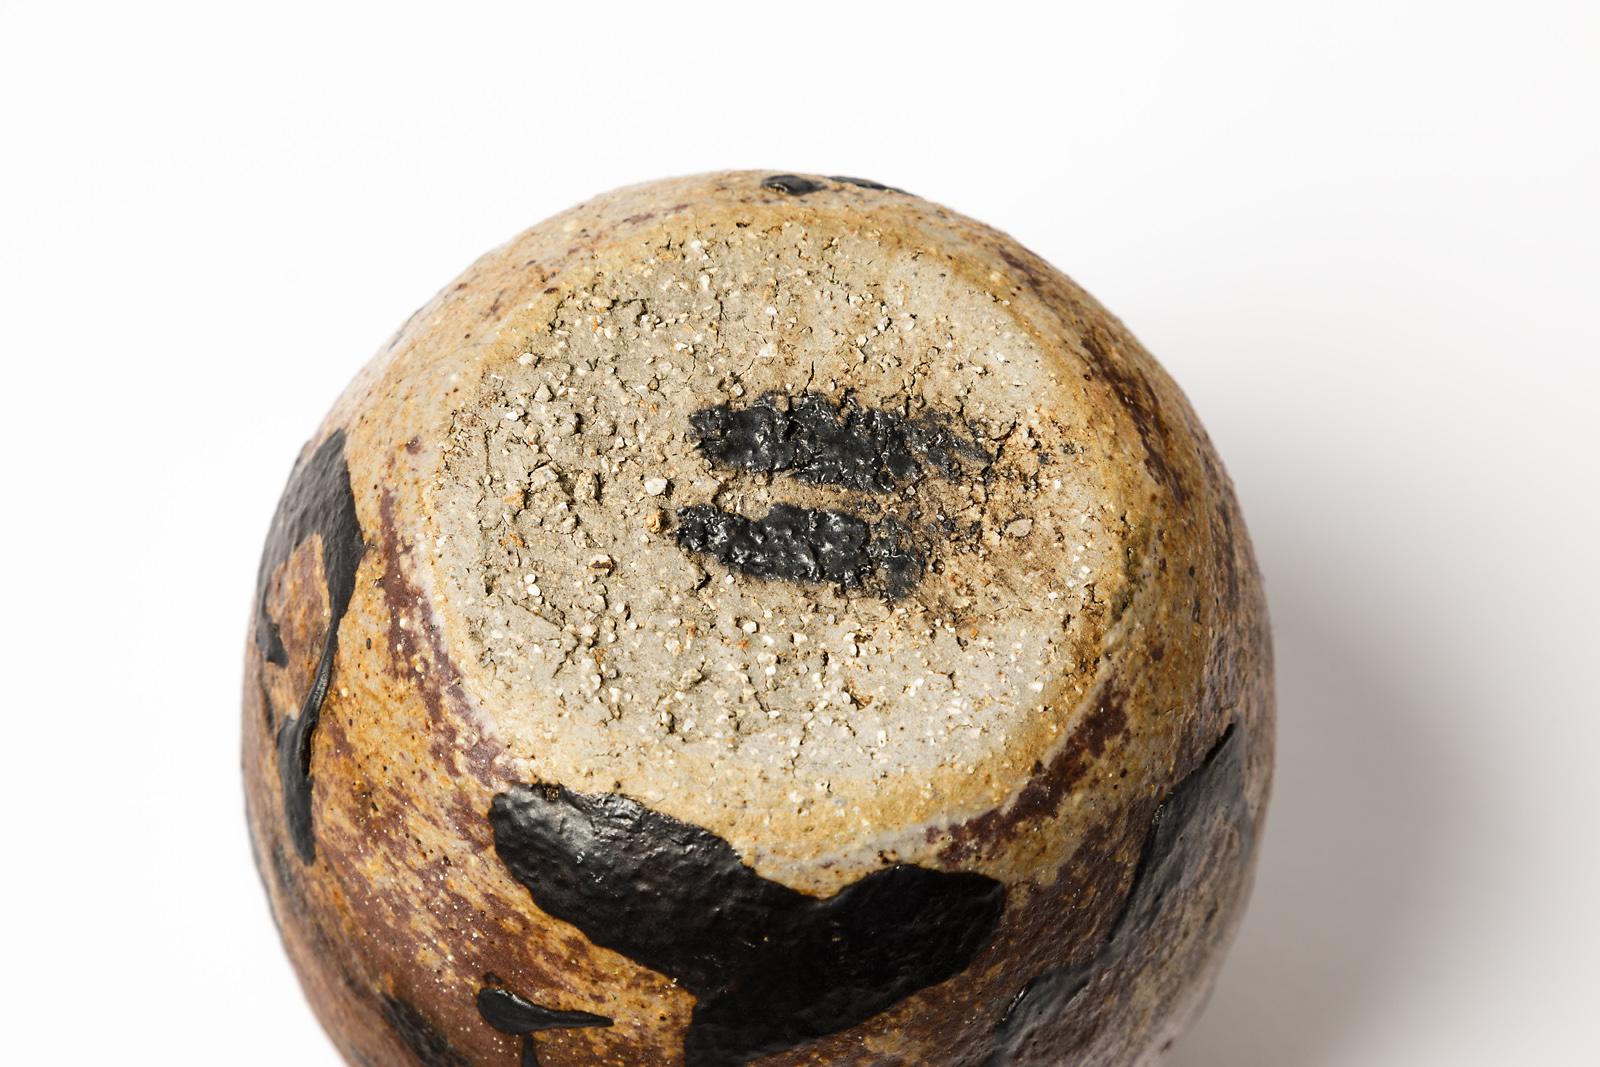 David Whitehead

Keramikvase aus Steingut, realisiert in La Borne 

Ungefähr 2000

Handgefertigtes Einzelstück mit Unterschrift unter dem Sockel

Schwarzes und bronzenes Steingut in Keramikfarben

Maße: Höhe 14 cm Groß 11 cm.